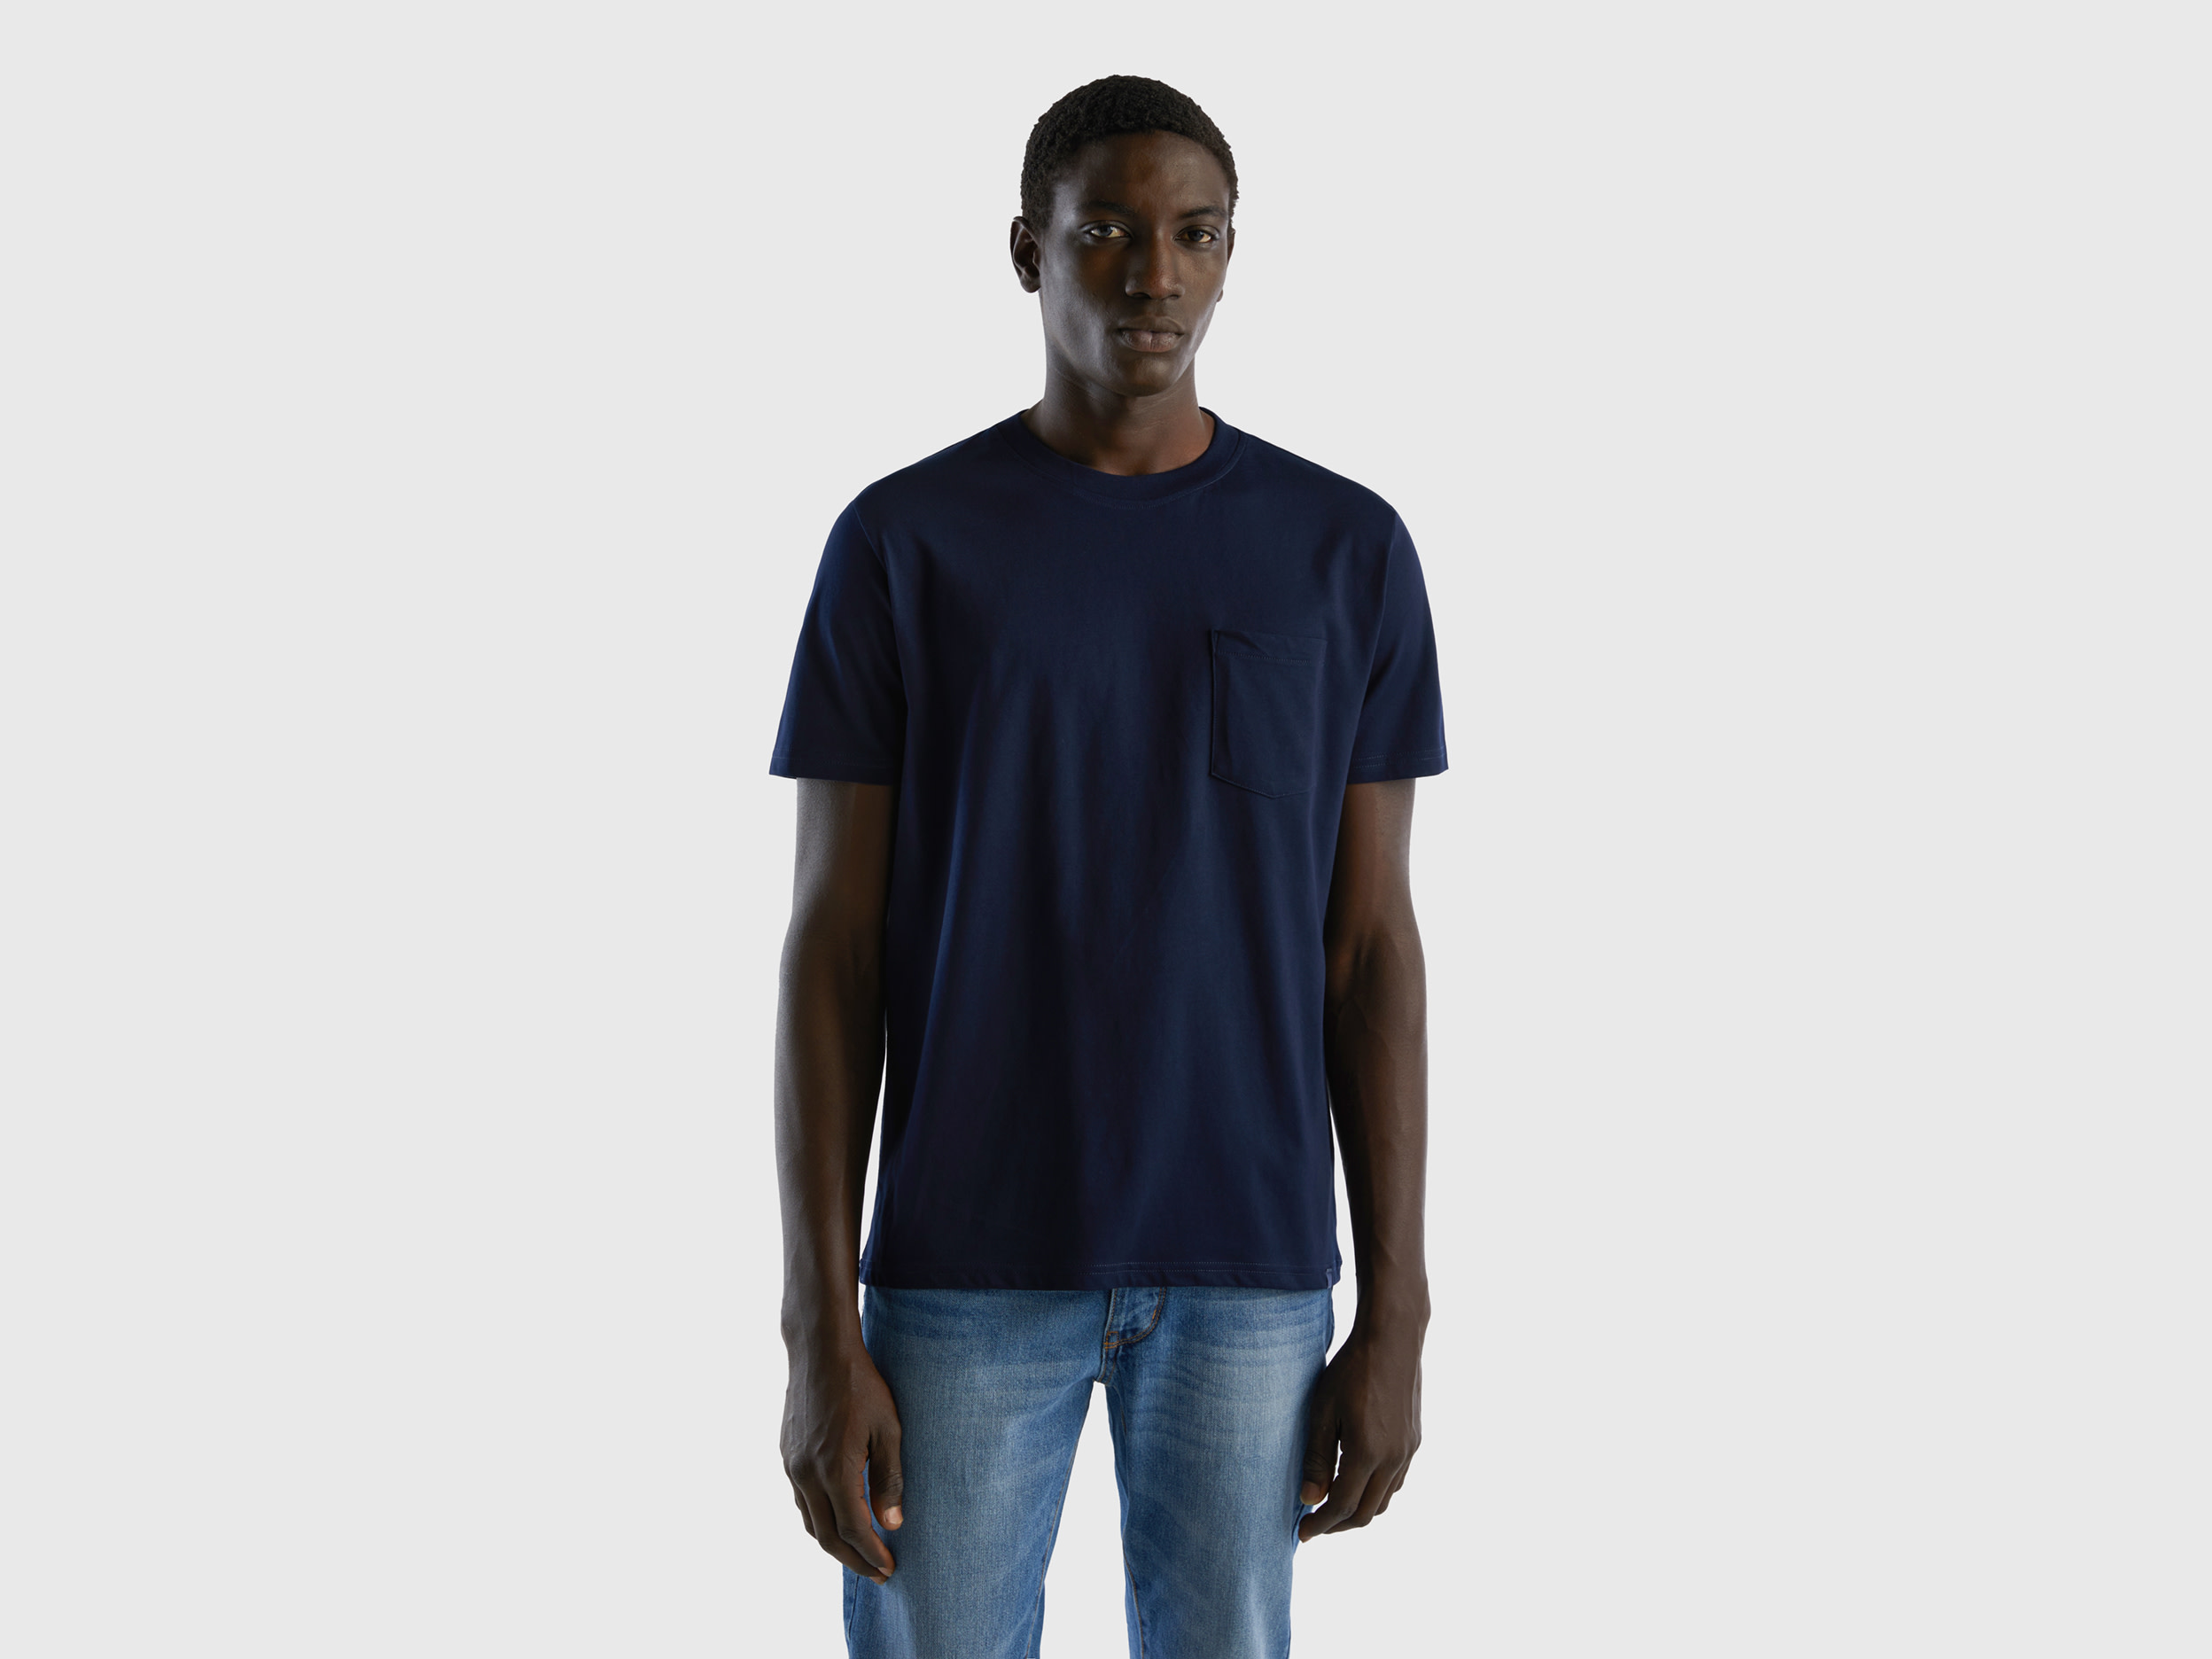 Benetton, 100% Cotton T-shirt With Pocket, size XXXL, Dark Blue, Men